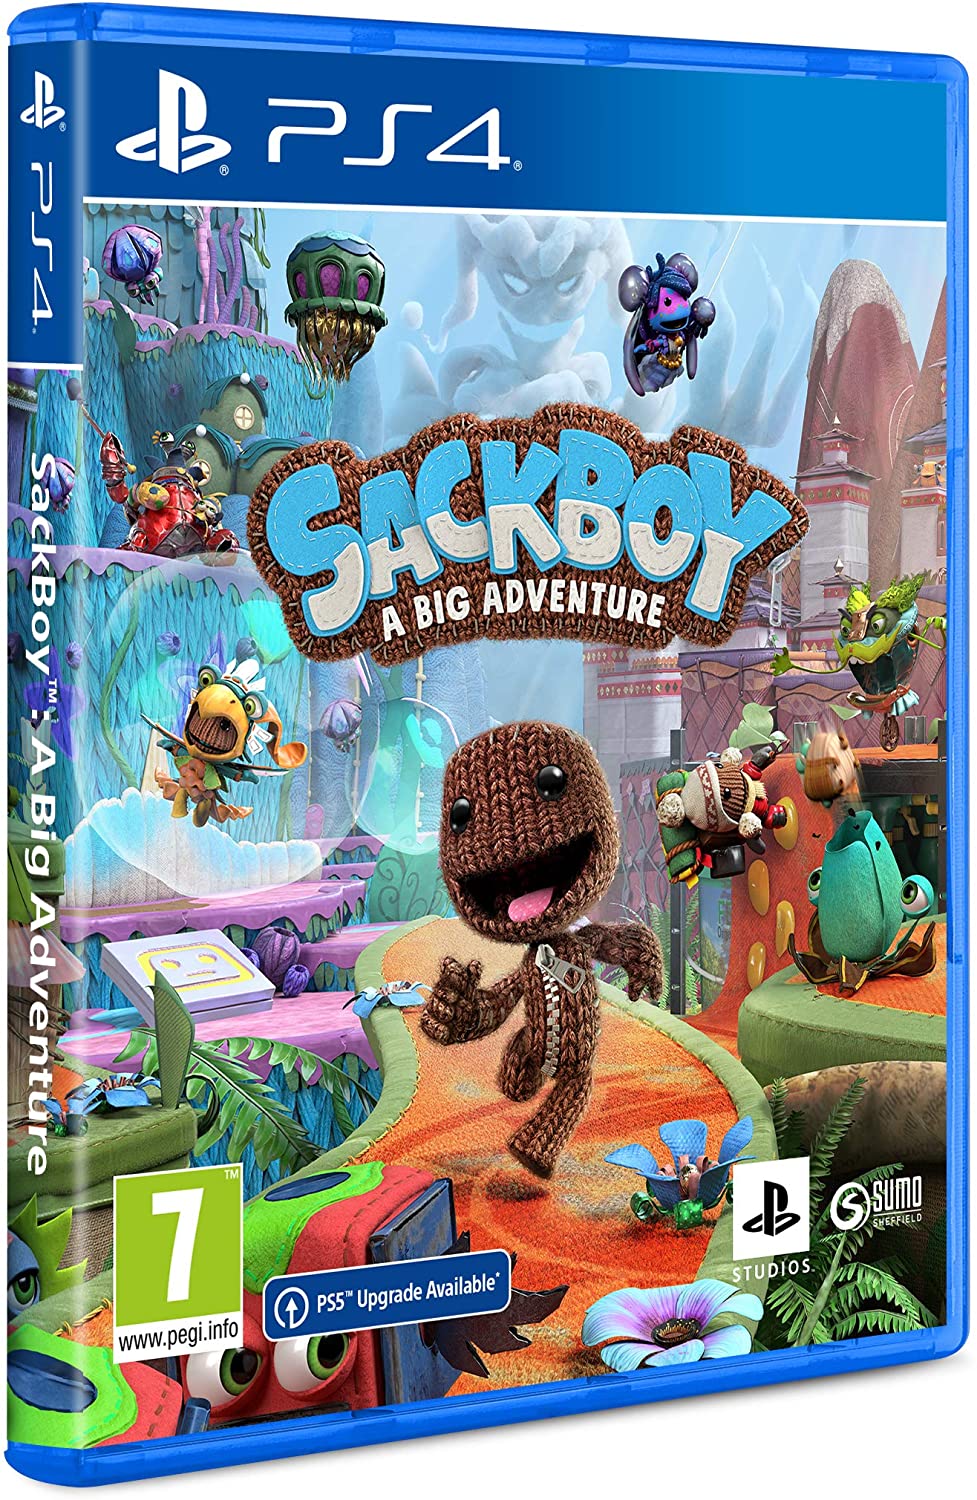 Sackboy: A Big Adventure - PlayStation 4